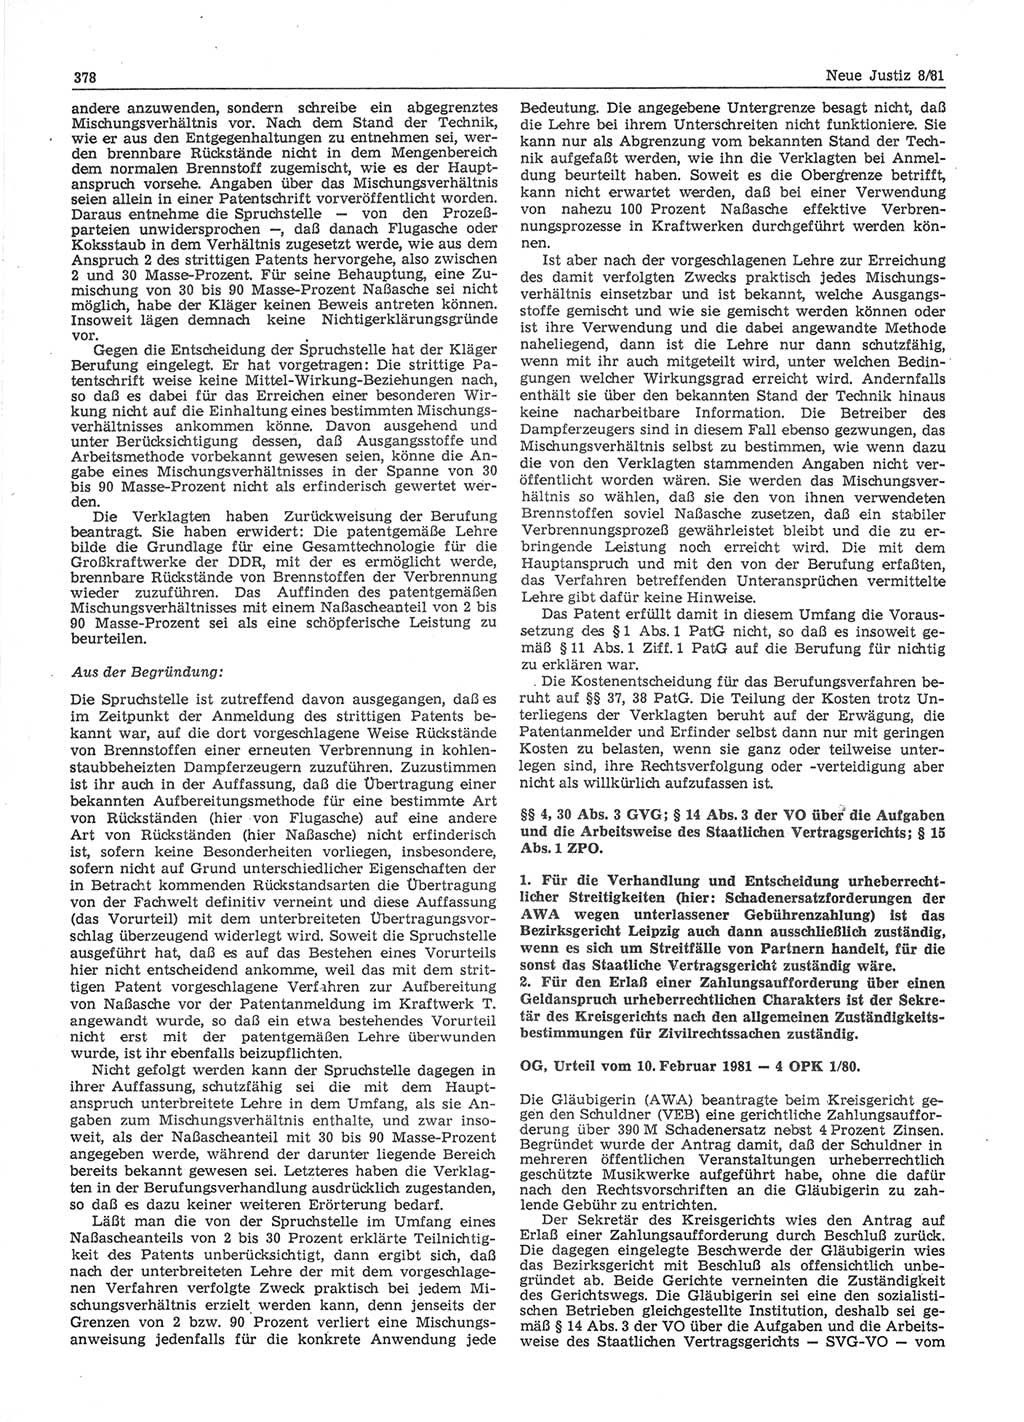 Neue Justiz (NJ), Zeitschrift für sozialistisches Recht und Gesetzlichkeit [Deutsche Demokratische Republik (DDR)], 35. Jahrgang 1981, Seite 378 (NJ DDR 1981, S. 378)